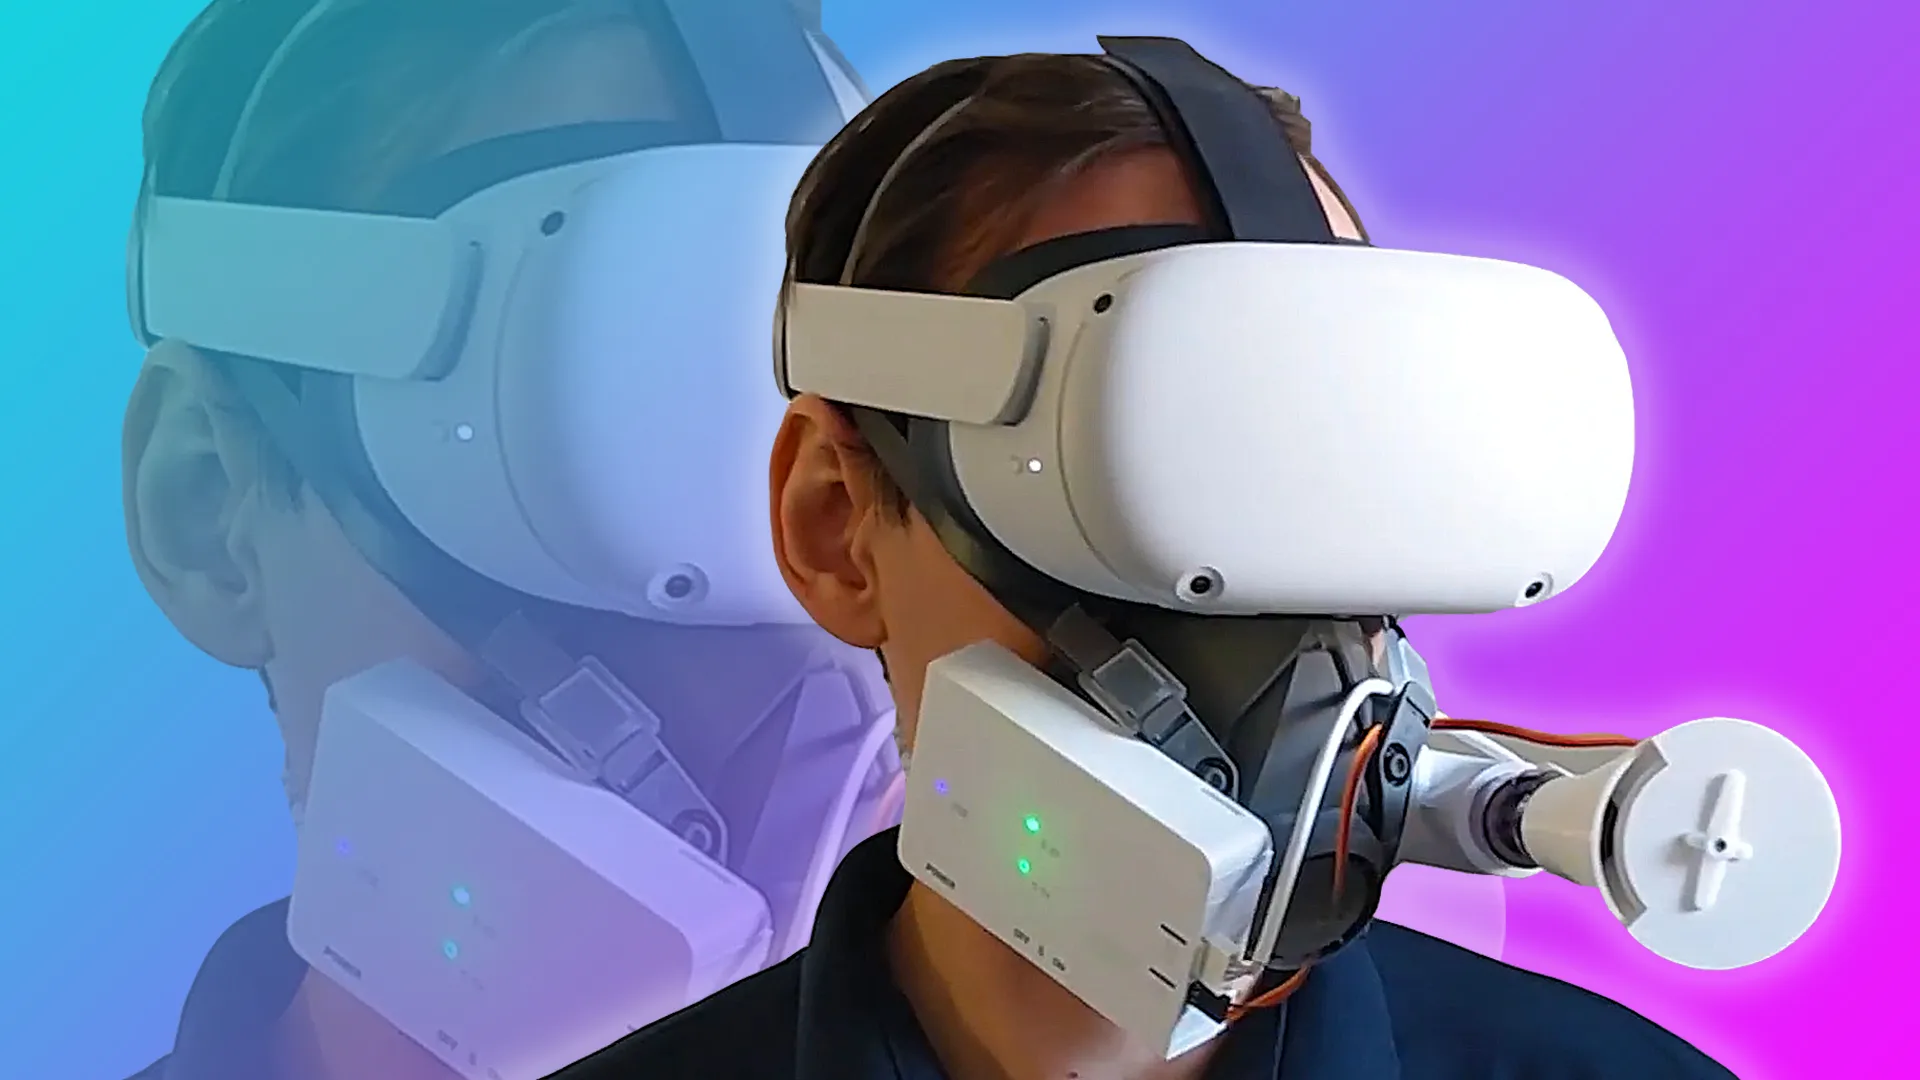 图片展示一位佩戴着虚拟现实头盔的人，背景是紫色和蓝色渐变，科技感强烈，未来感十足。